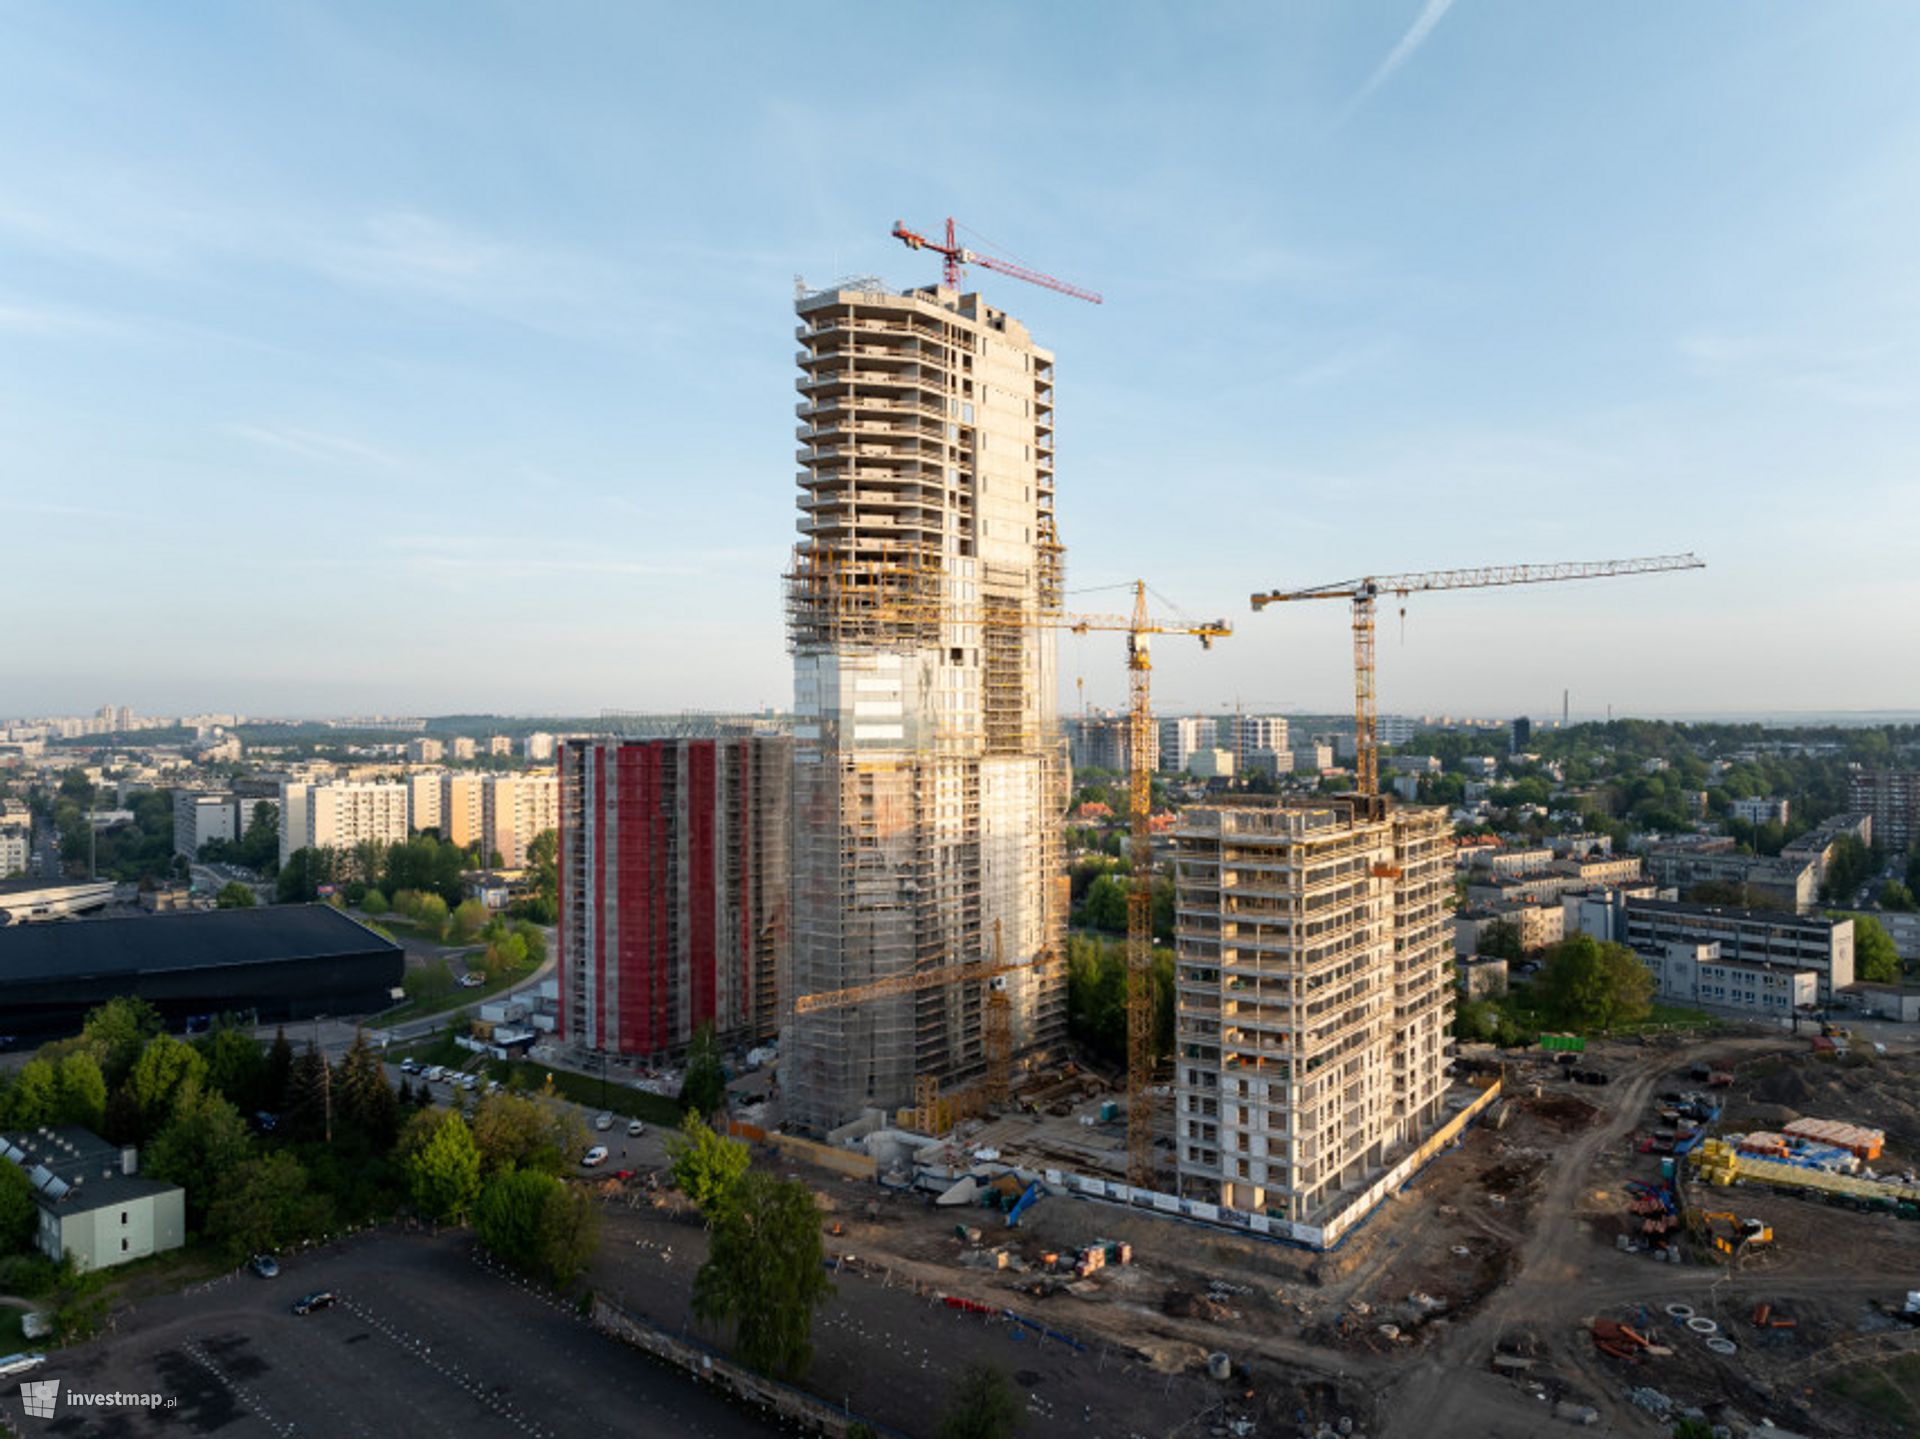 W centrum Katowic powstaje najwyższy budynek mieszkalny w woj. śląskim 